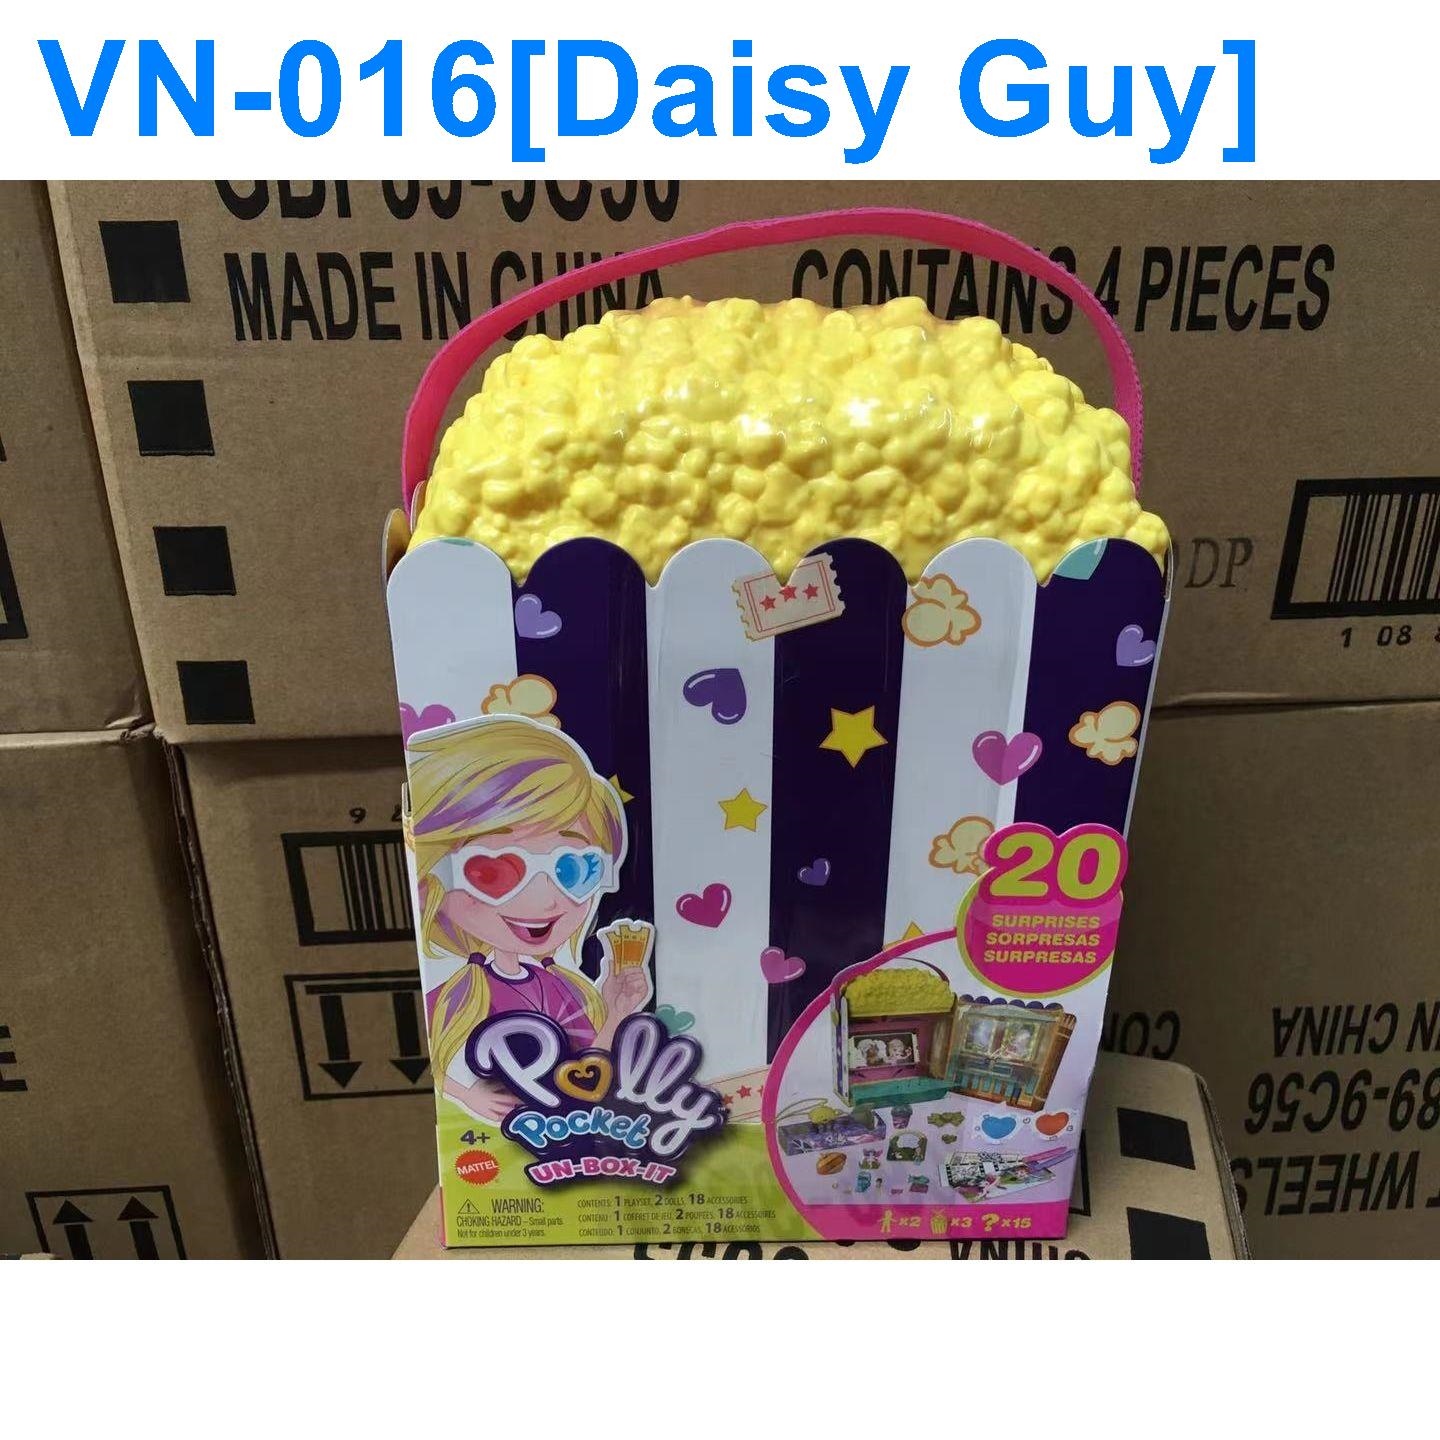 Daisy Guy Polly Pocket mini Polly Pocket popcorn movie surprise party play